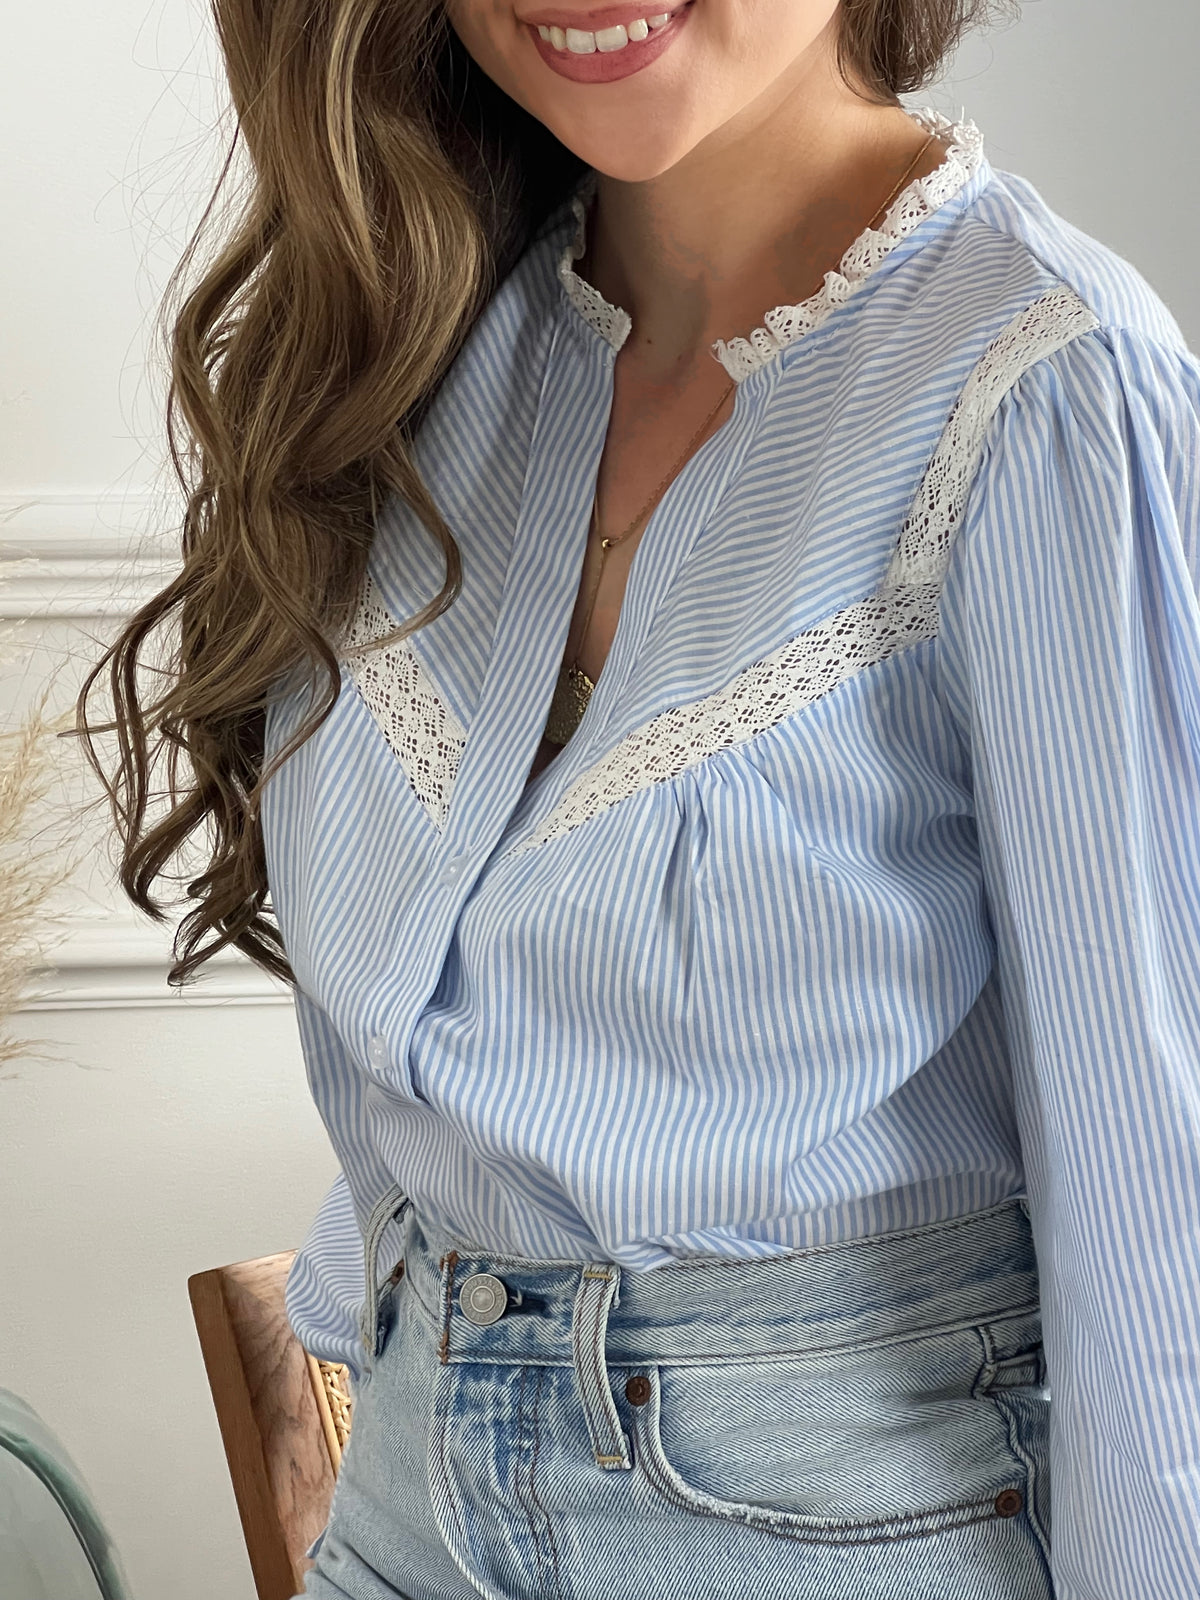 Cette chemise à rayures bleues et blanches est sublimée par des broderies raffinées, ajoutant une touche d'originalité. Parfaite pour une élégance décontractée, elle allie avec brio le charme traditionnel au chic contemporain, faisant d'elle un incontournable de toute garde-robe moderne